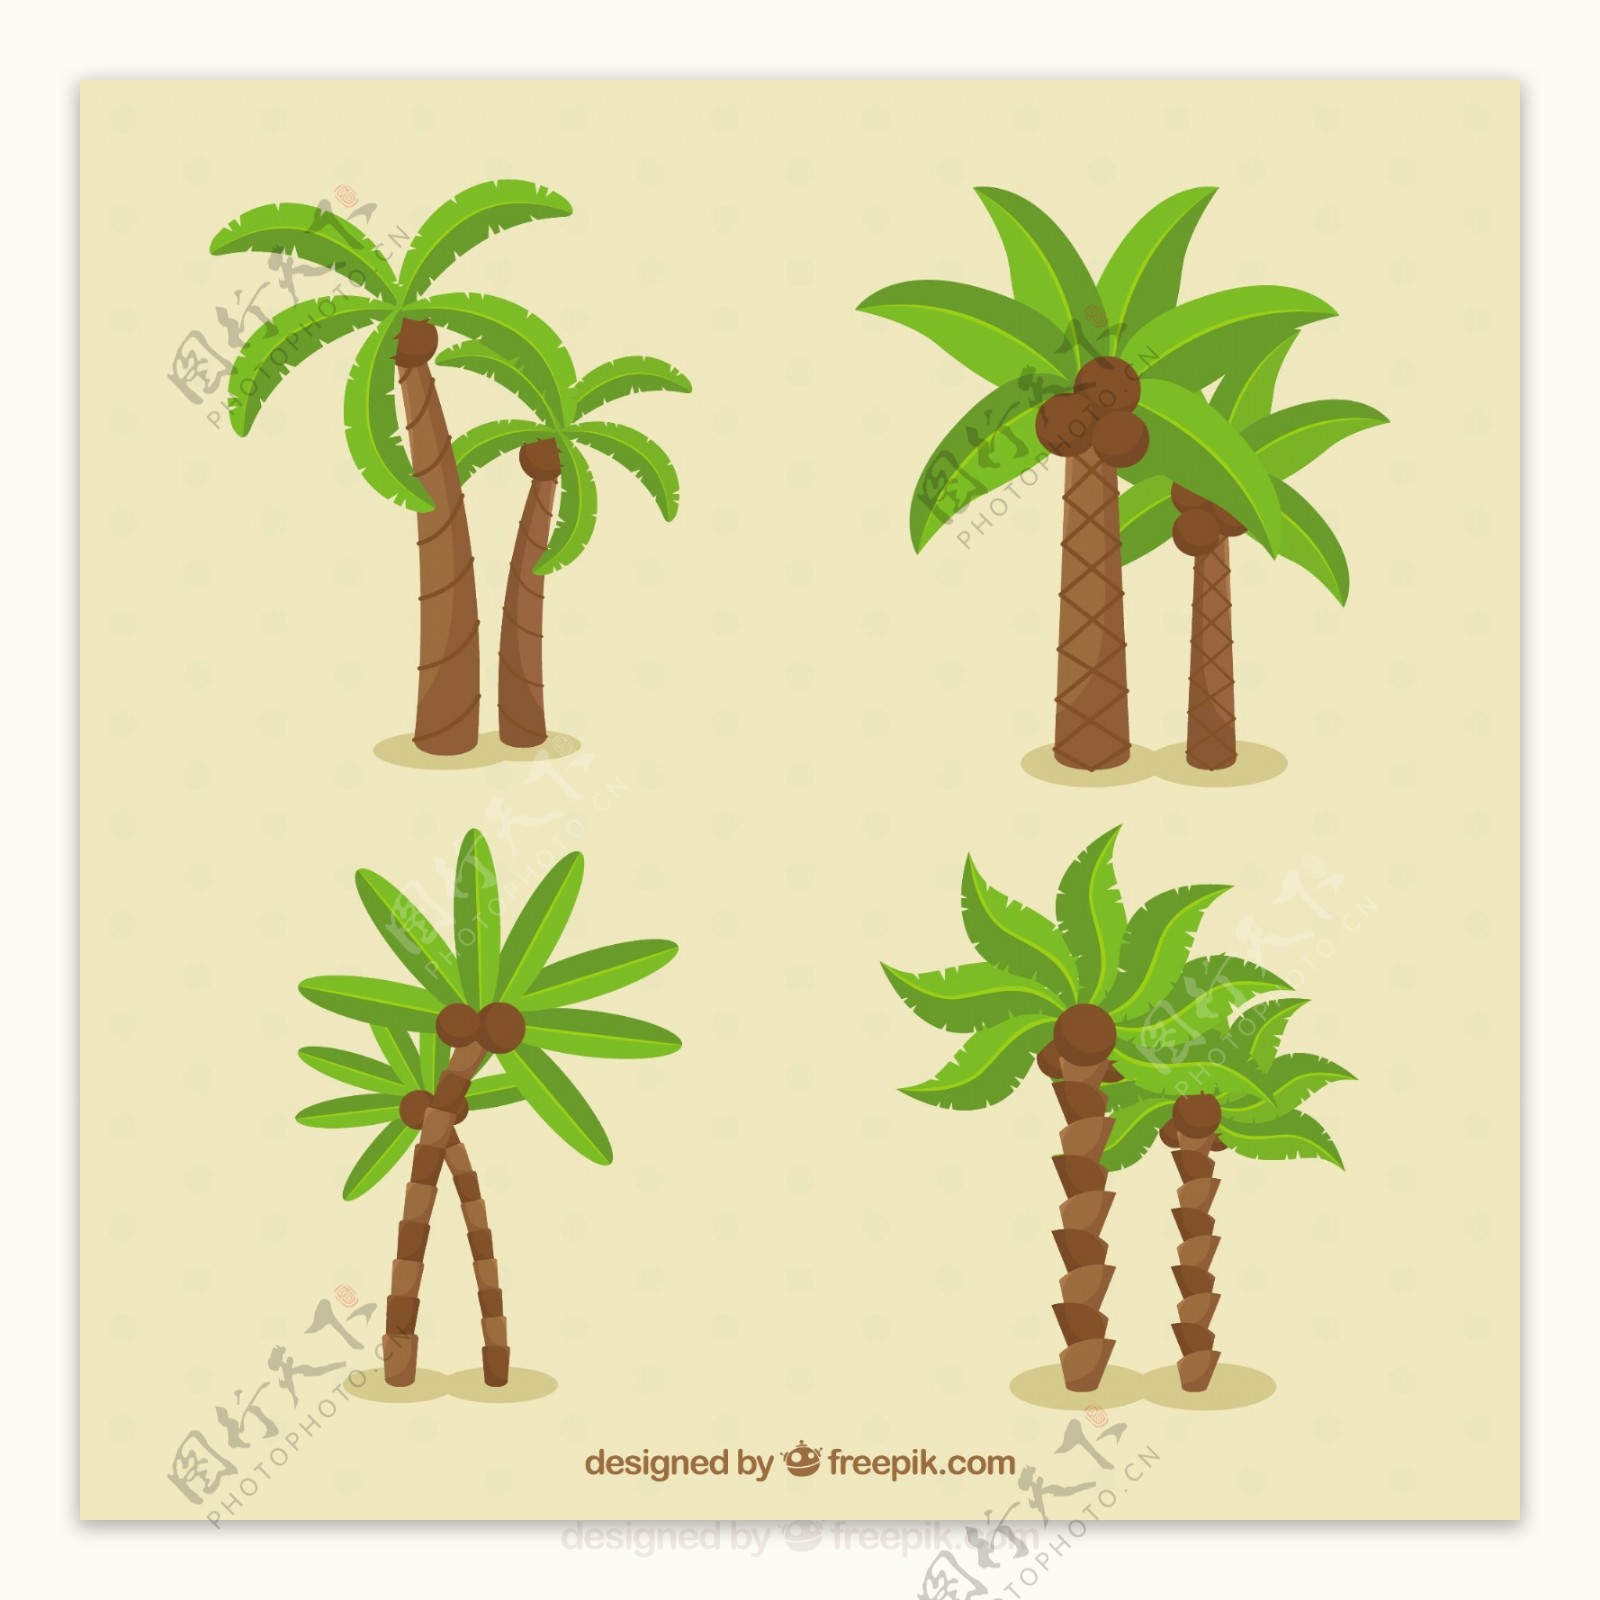 不同类型的棕榈树矢量素材